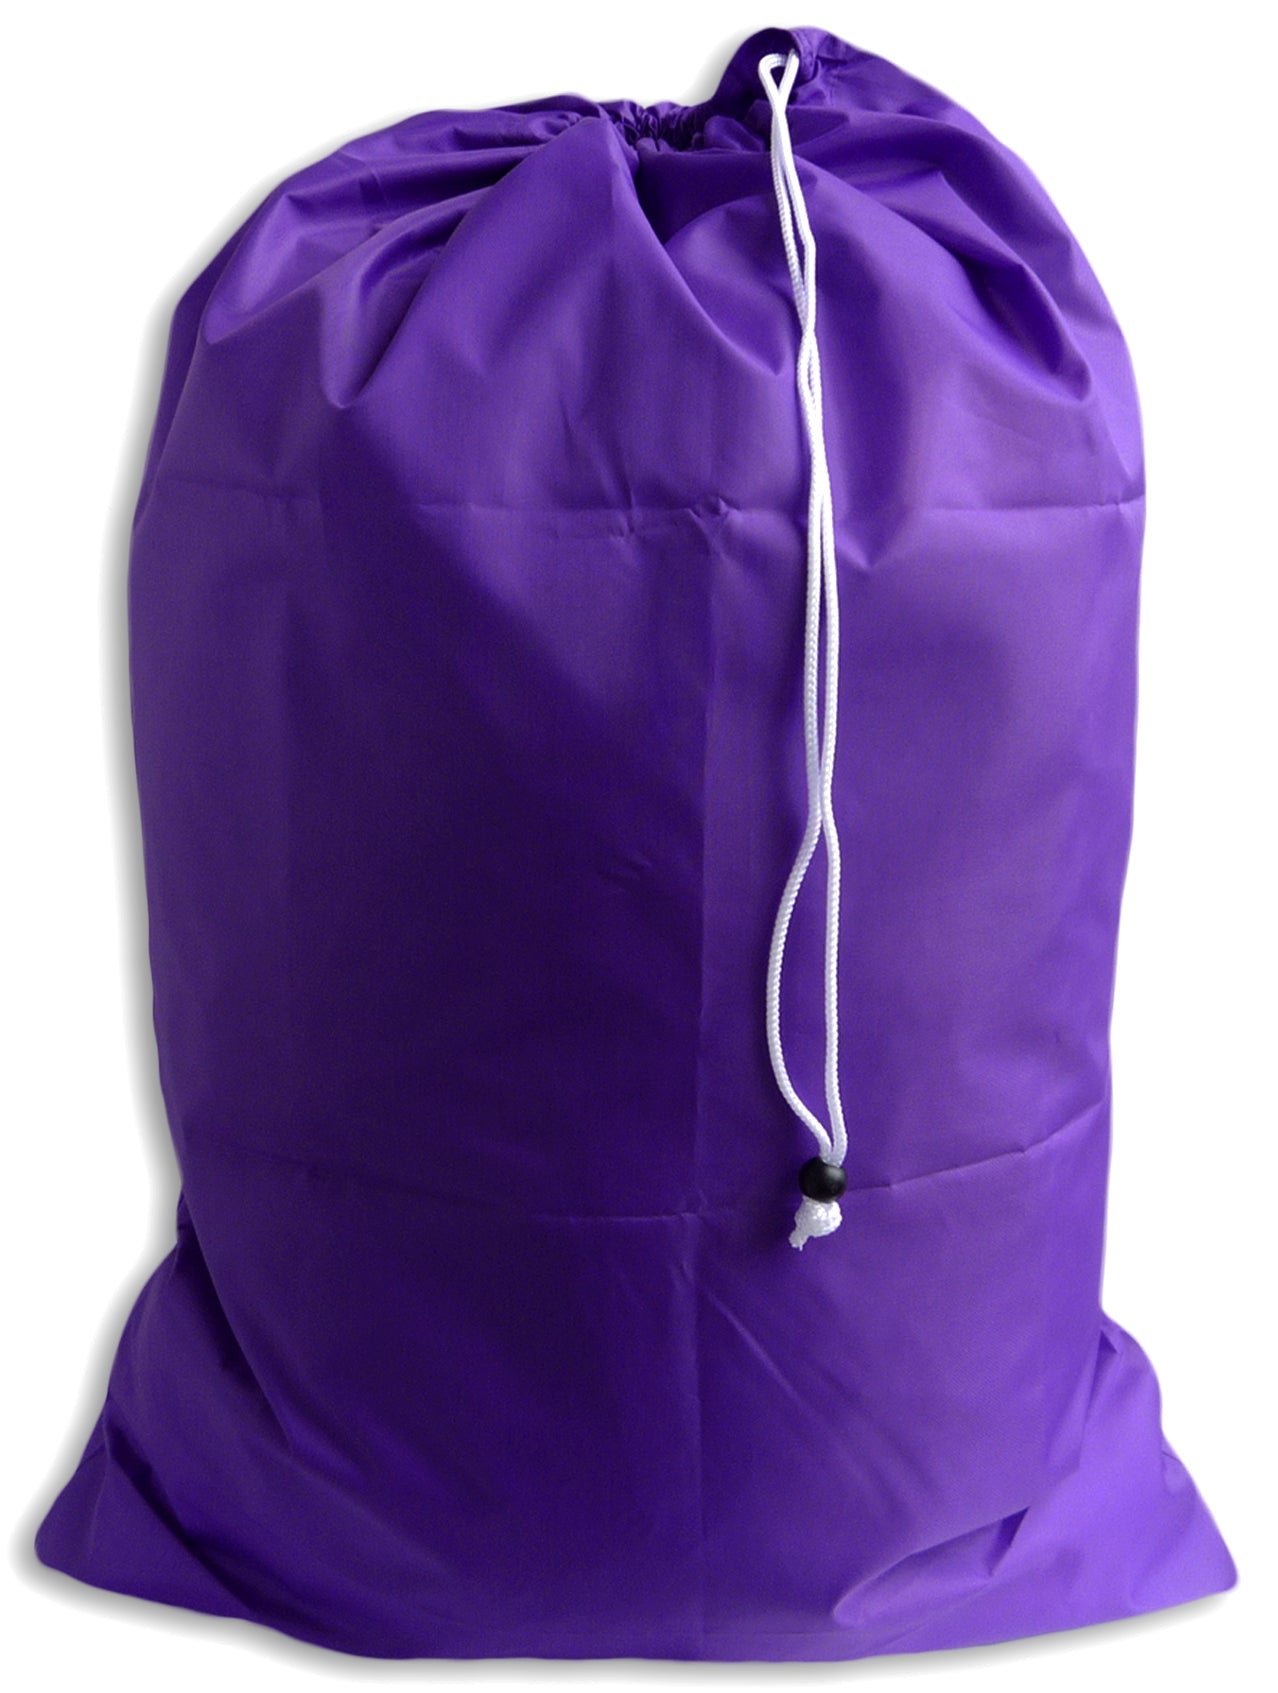 Laundry bags – Purple Cactus Lingerie